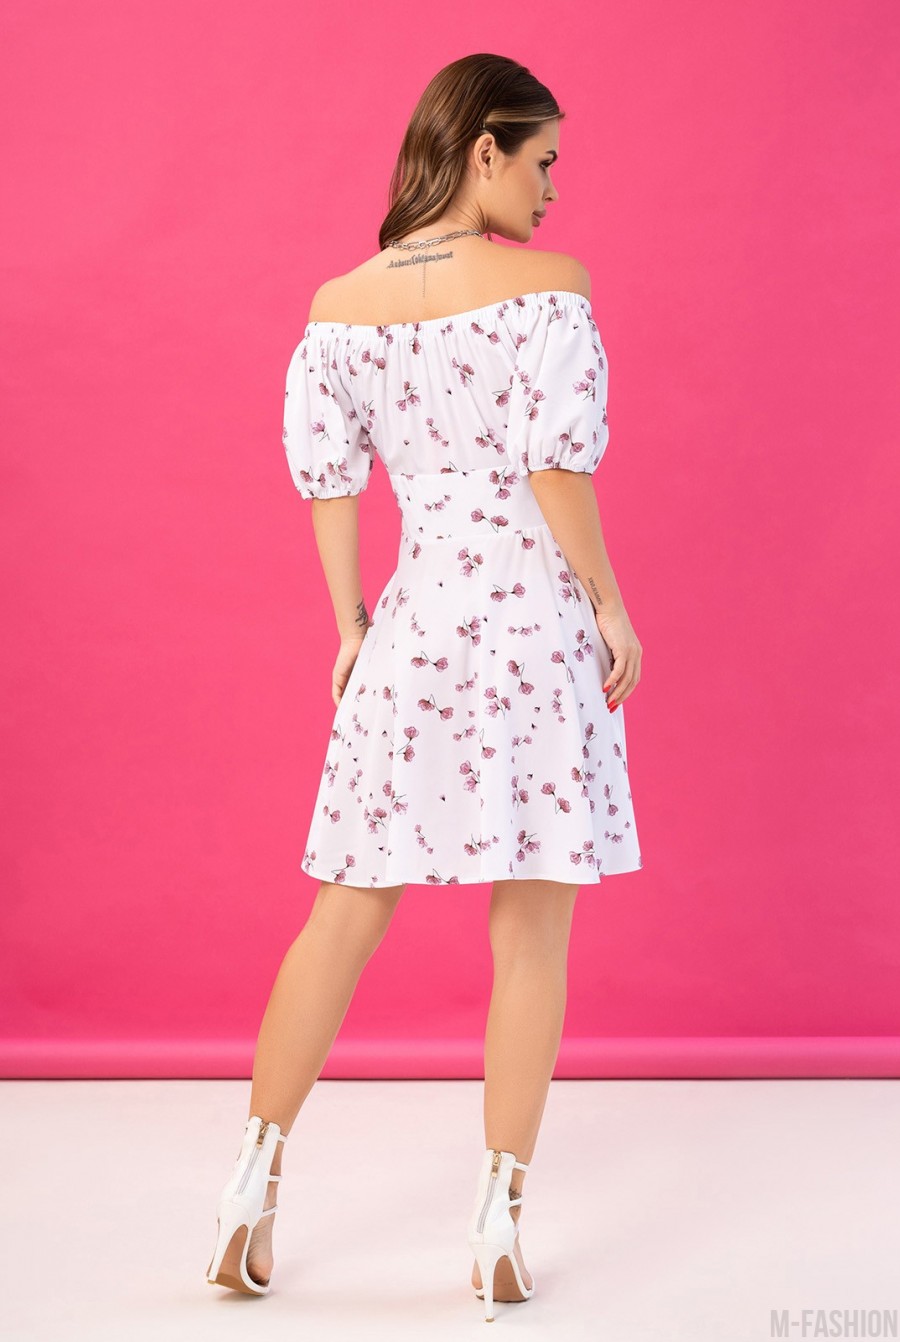 Бело-розовое цветочное платье с открытыми плечами - Фото 3